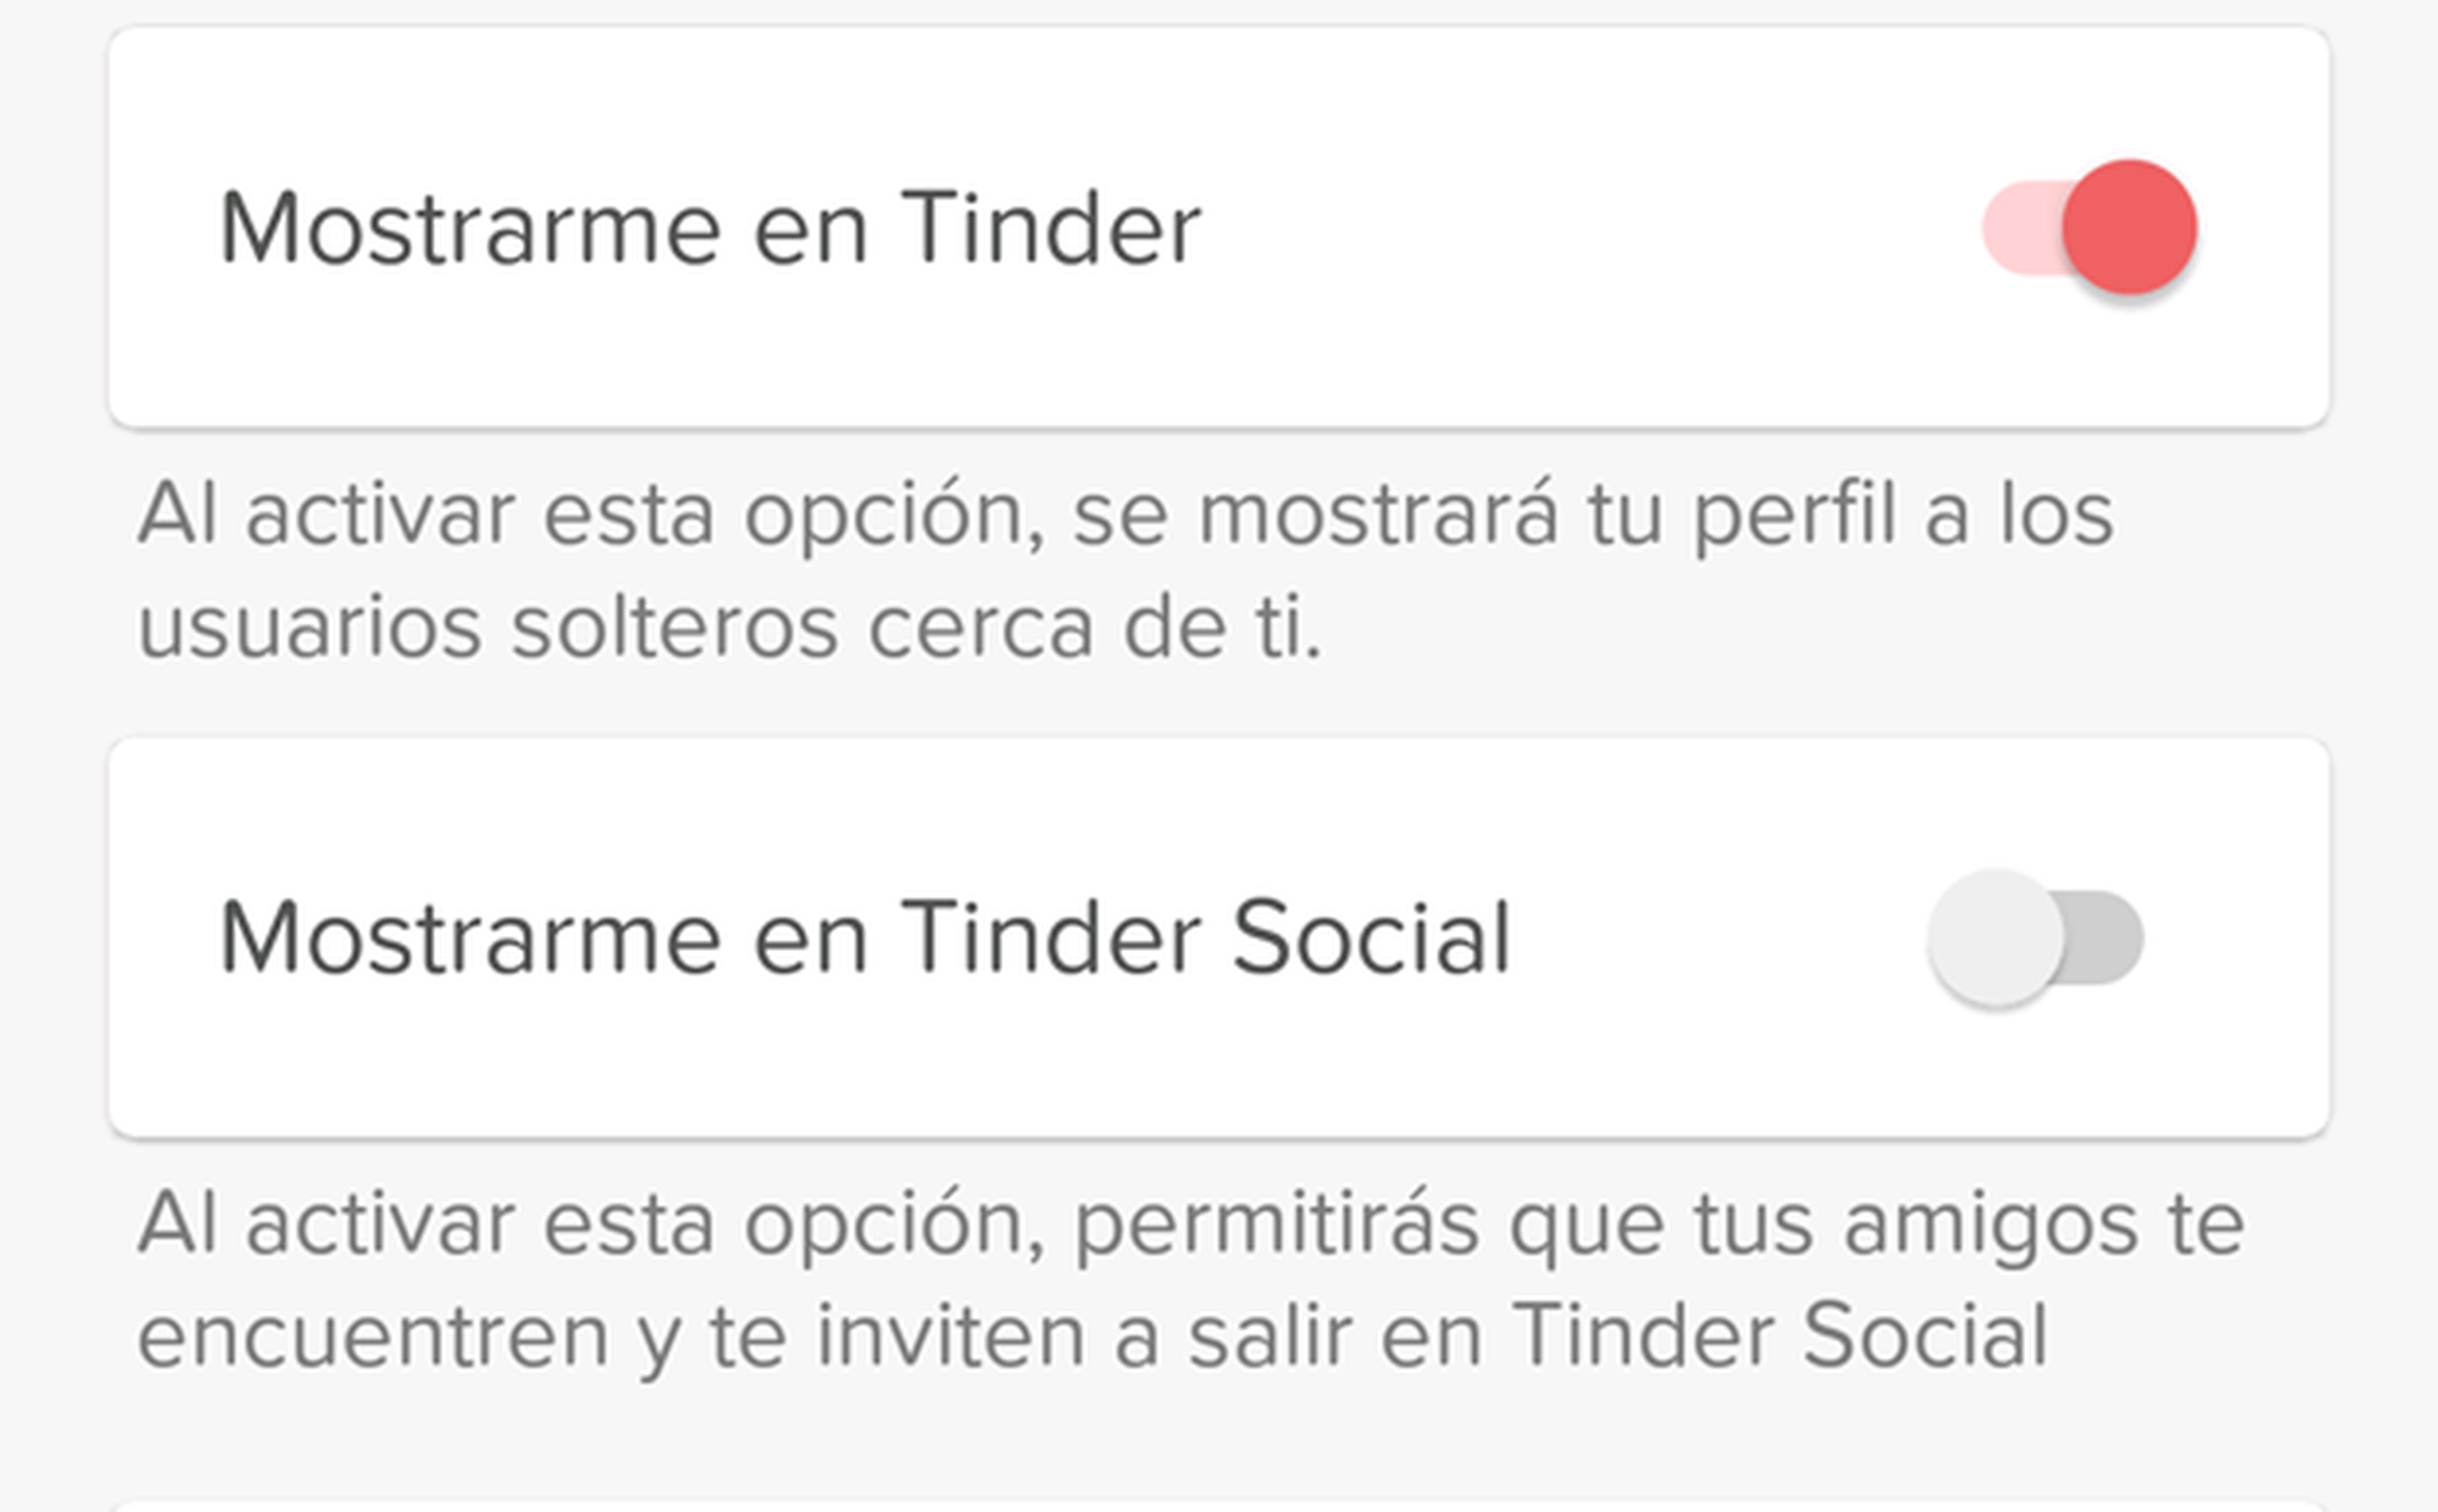 Tinder Social